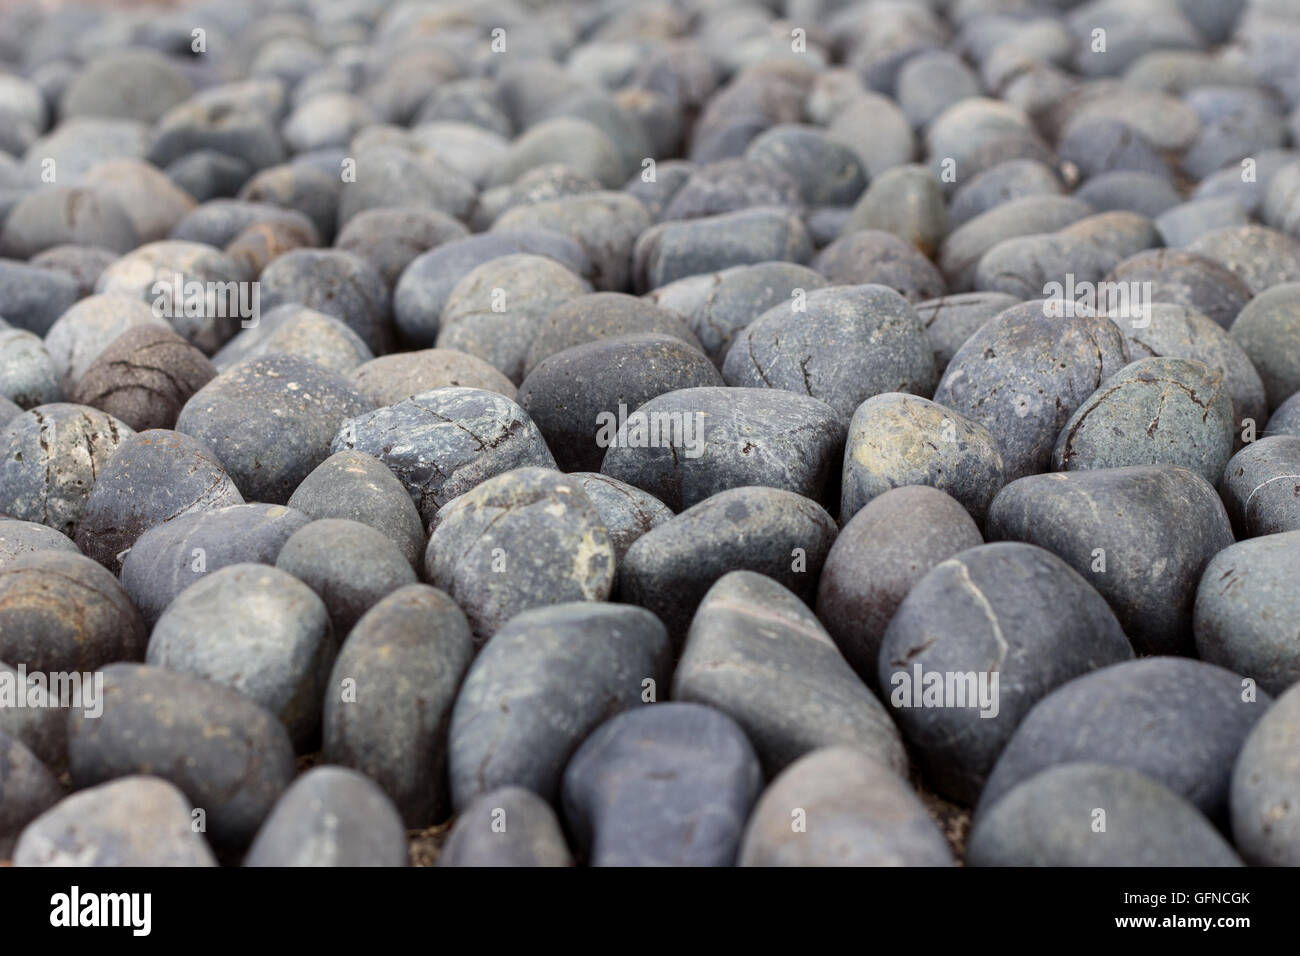 Round sleek cobbles in full frame Stock Photo